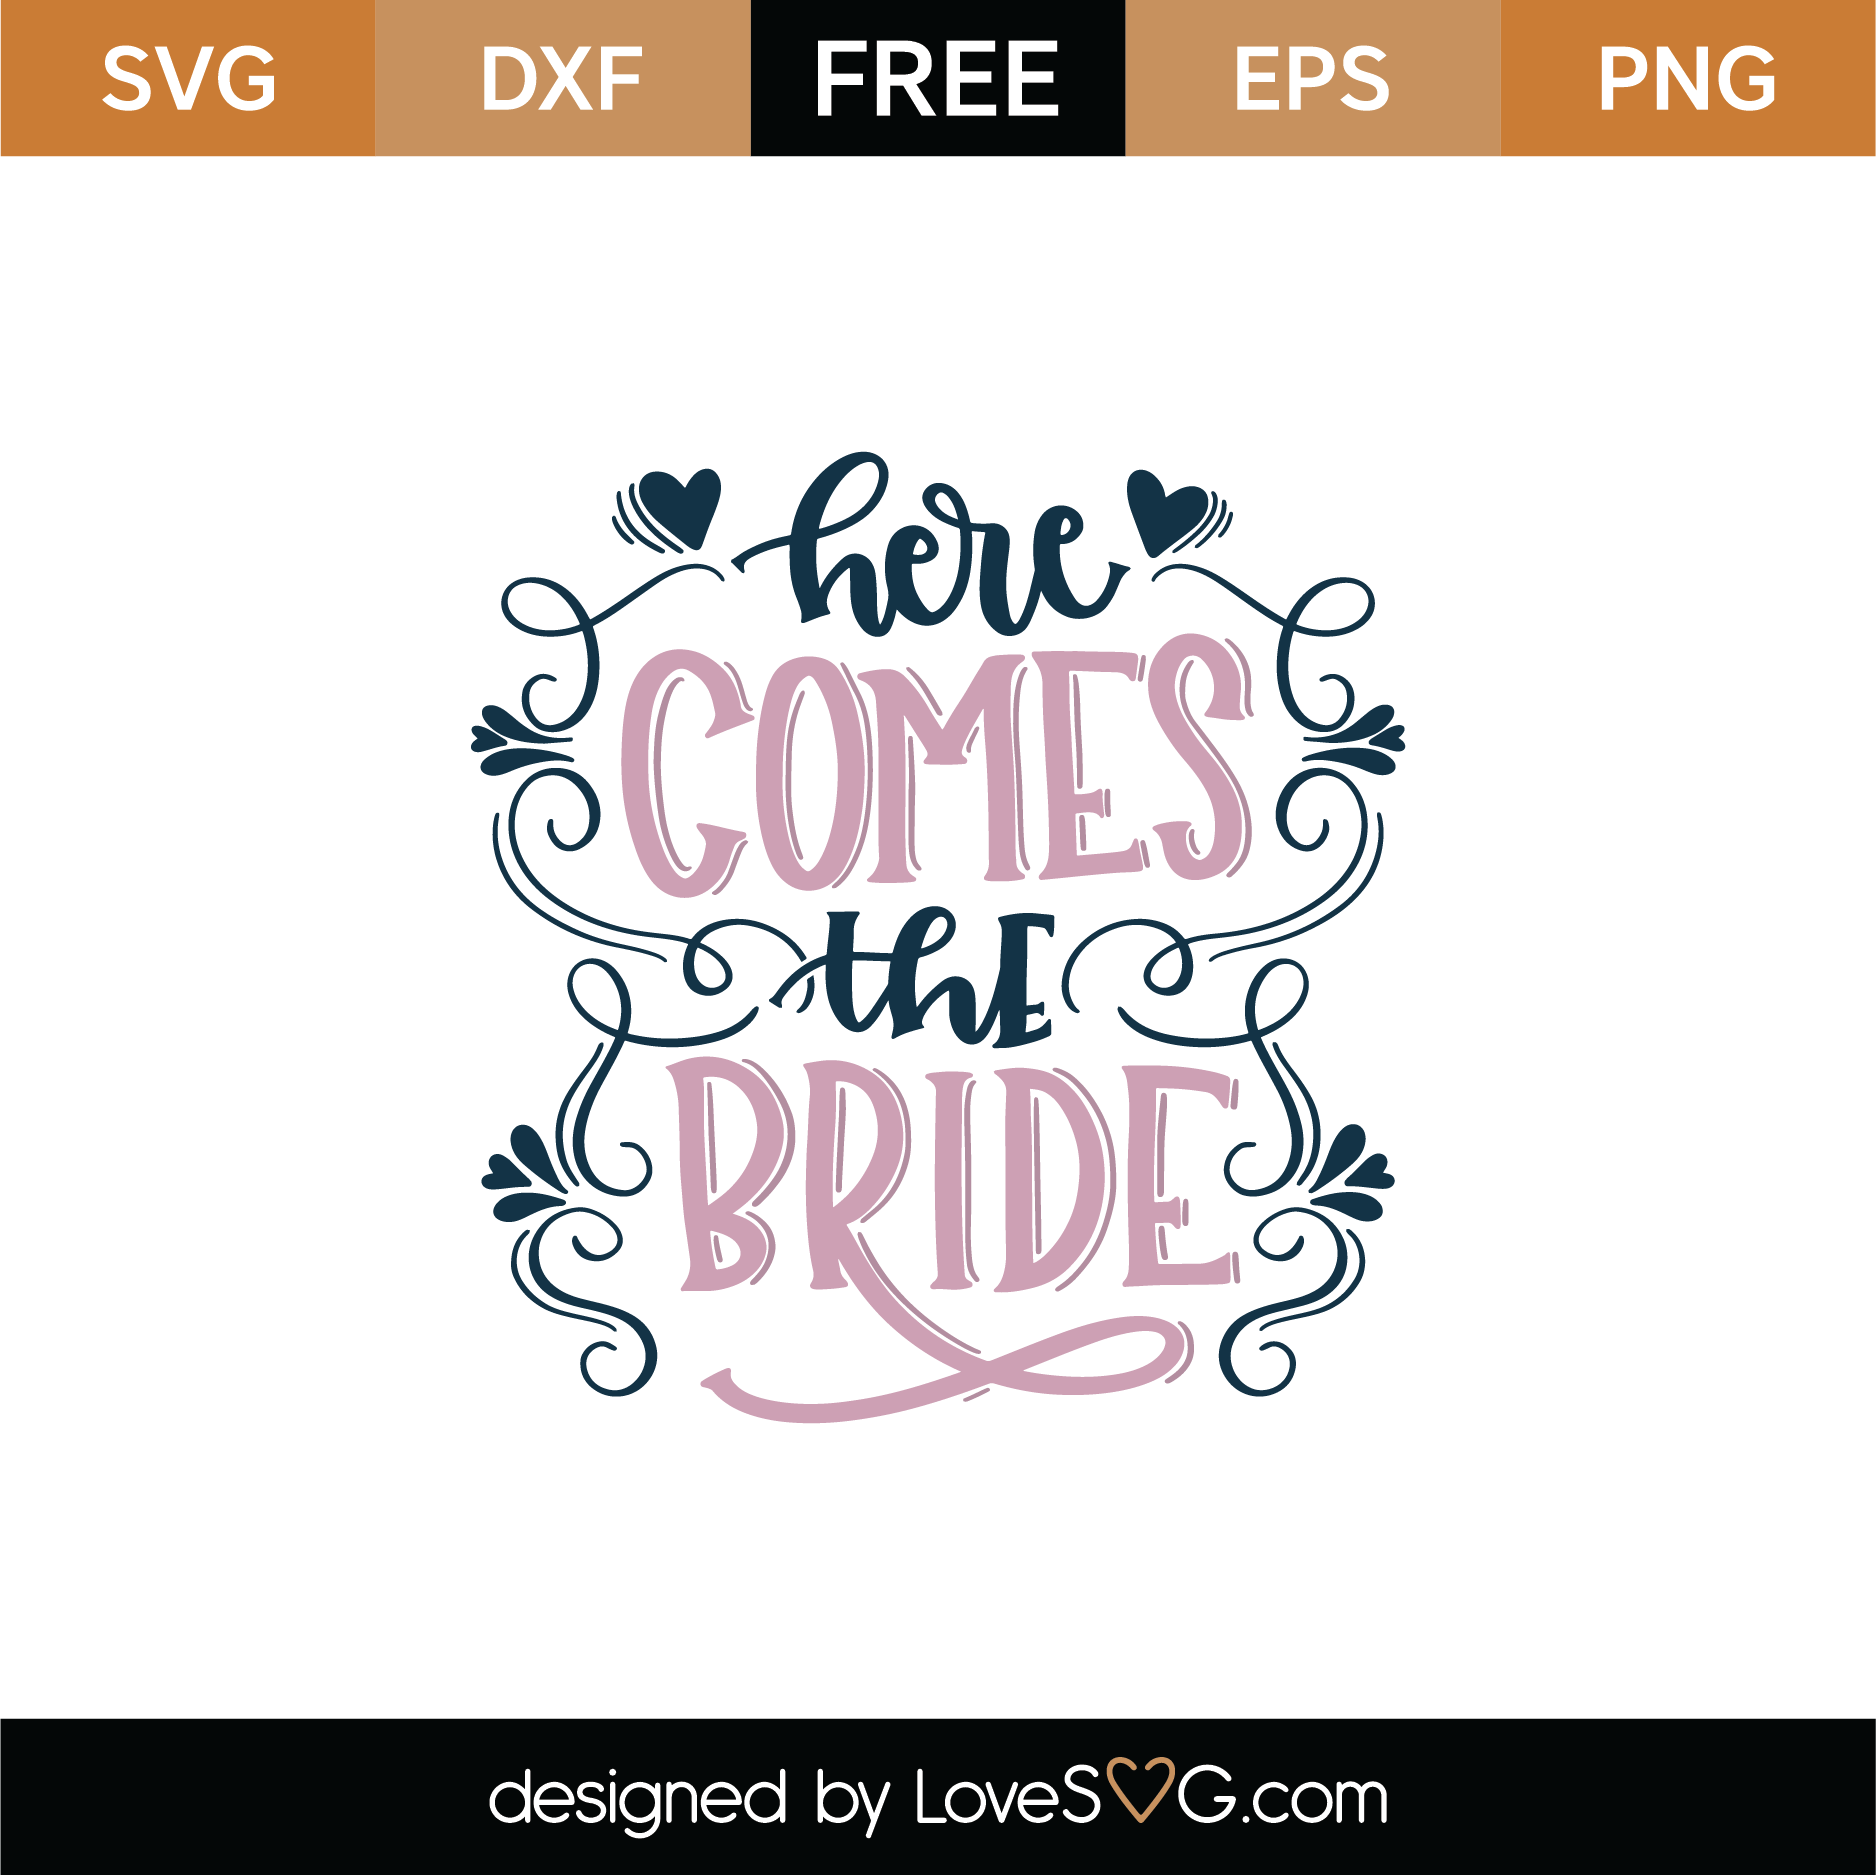 Download Free Here Comes The Bride SVG Cut File | Lovesvg.com